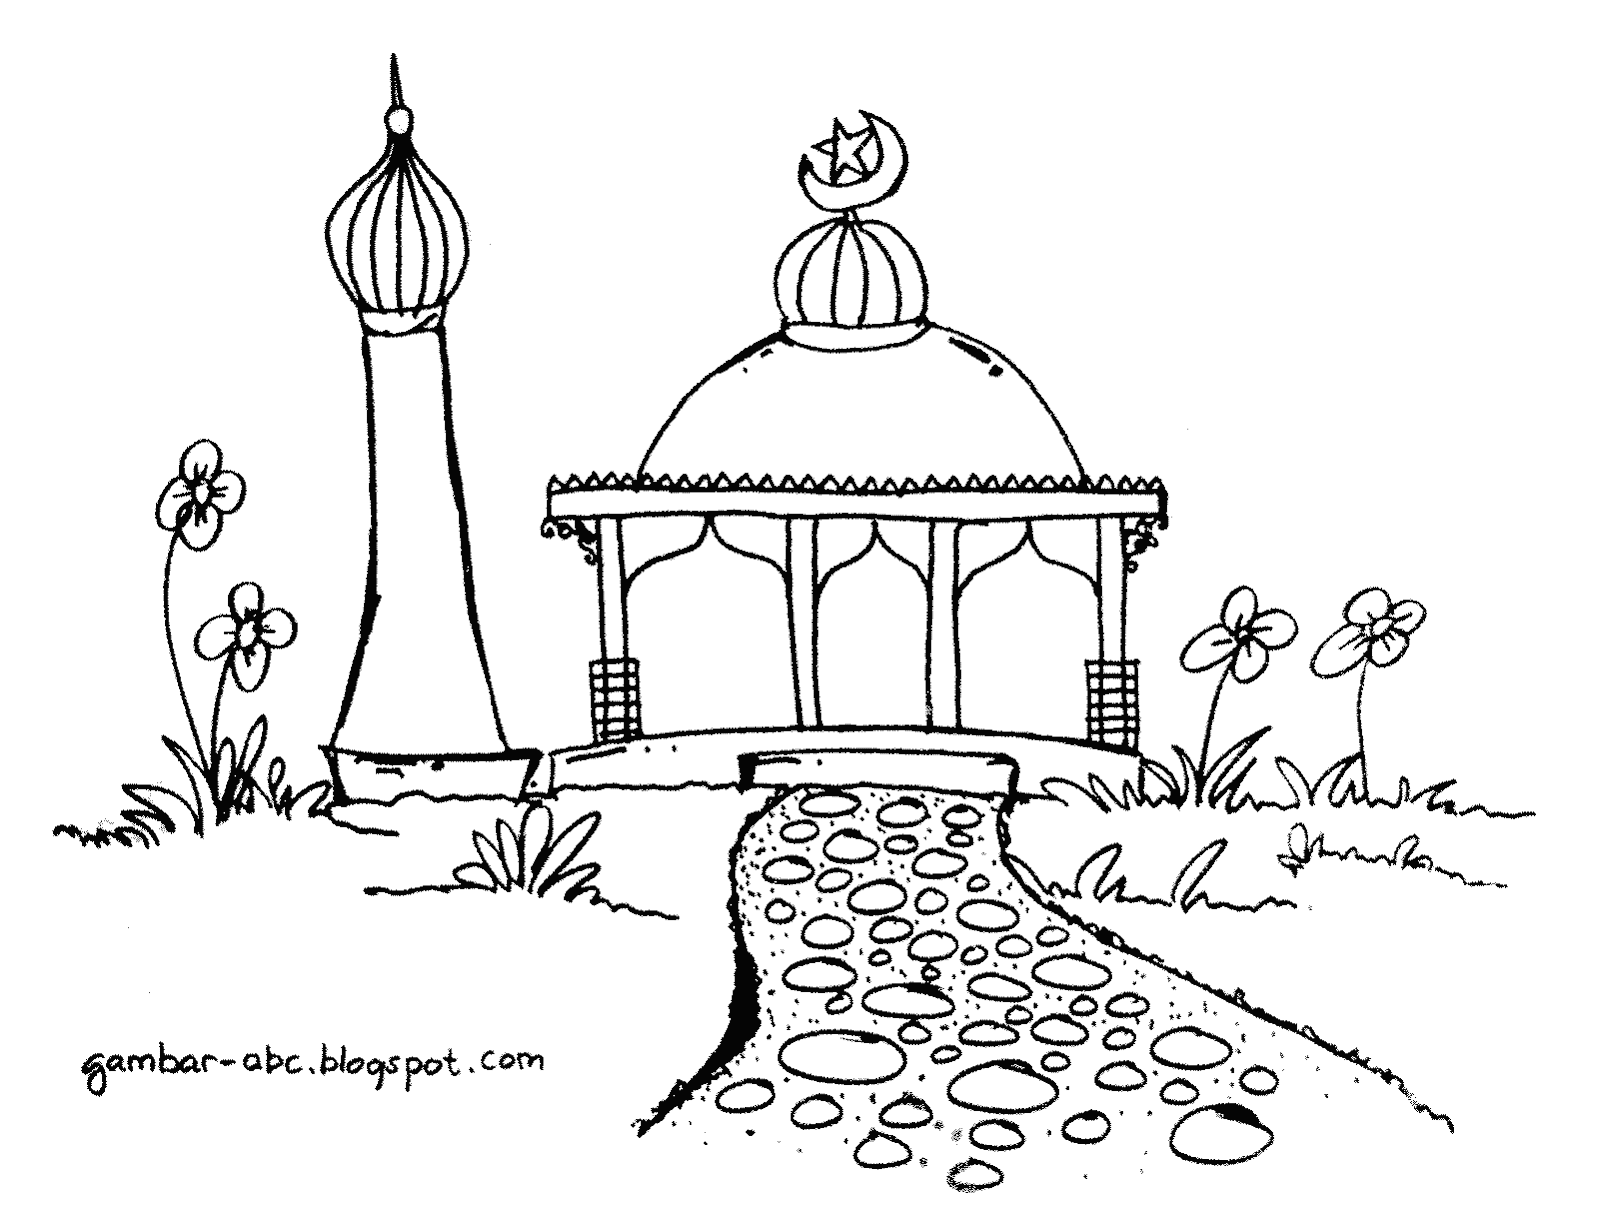 Mewarnai Gambar Masjid - Contoh Gambar Mewarnai